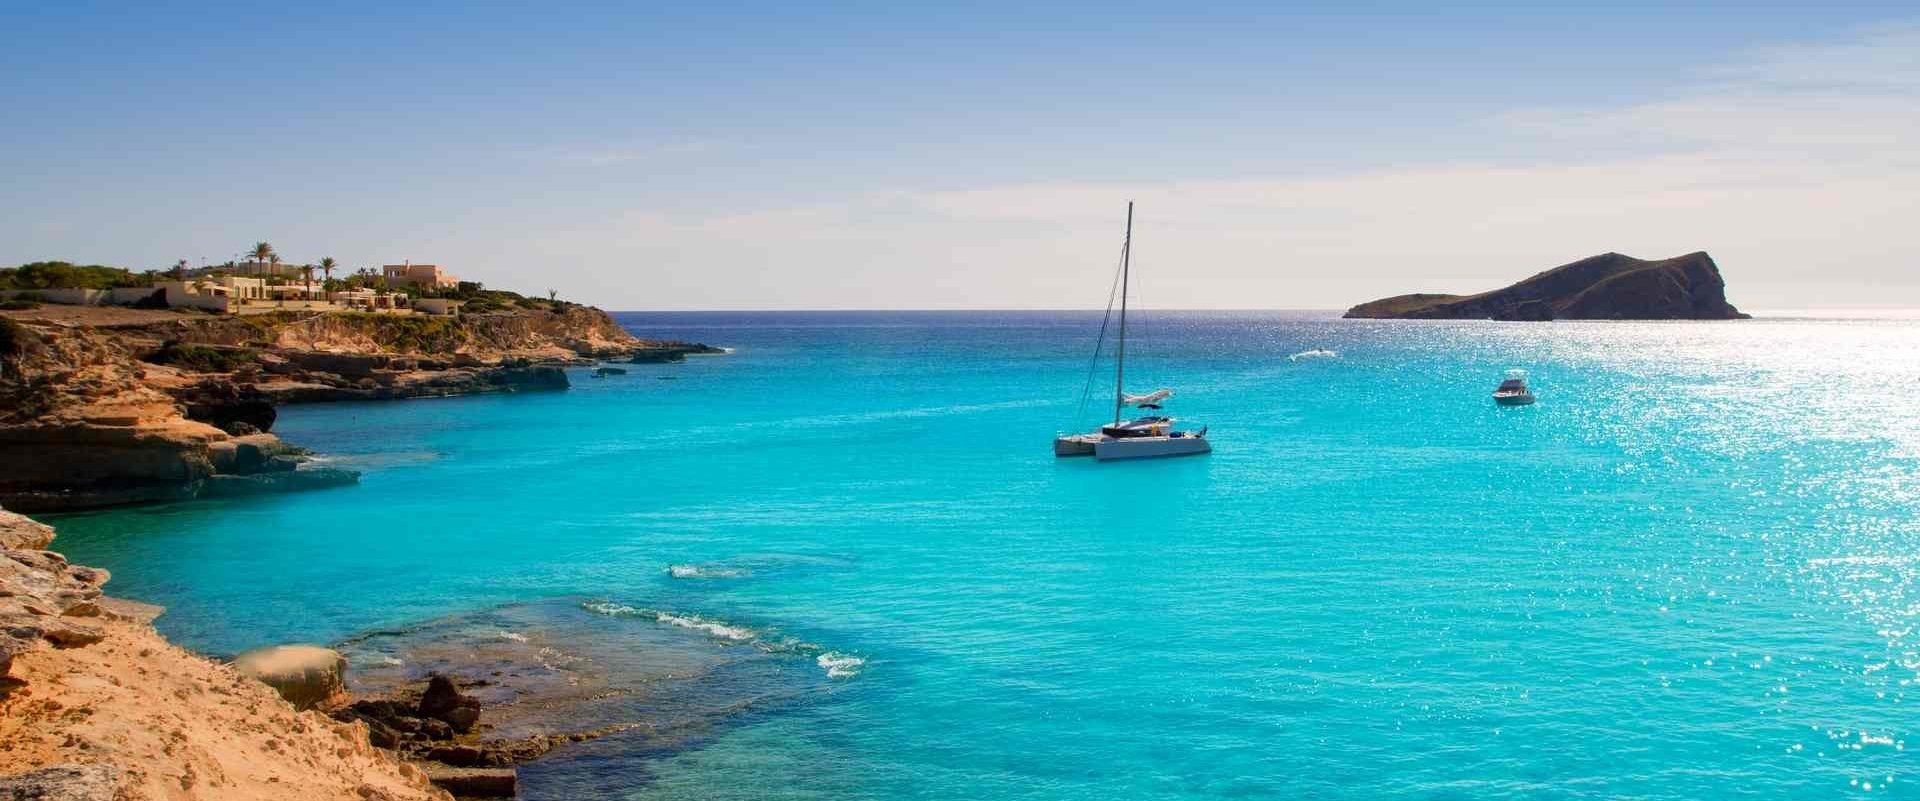 All Inclusive catamaran cruise: Mallorca, Balearic Islands